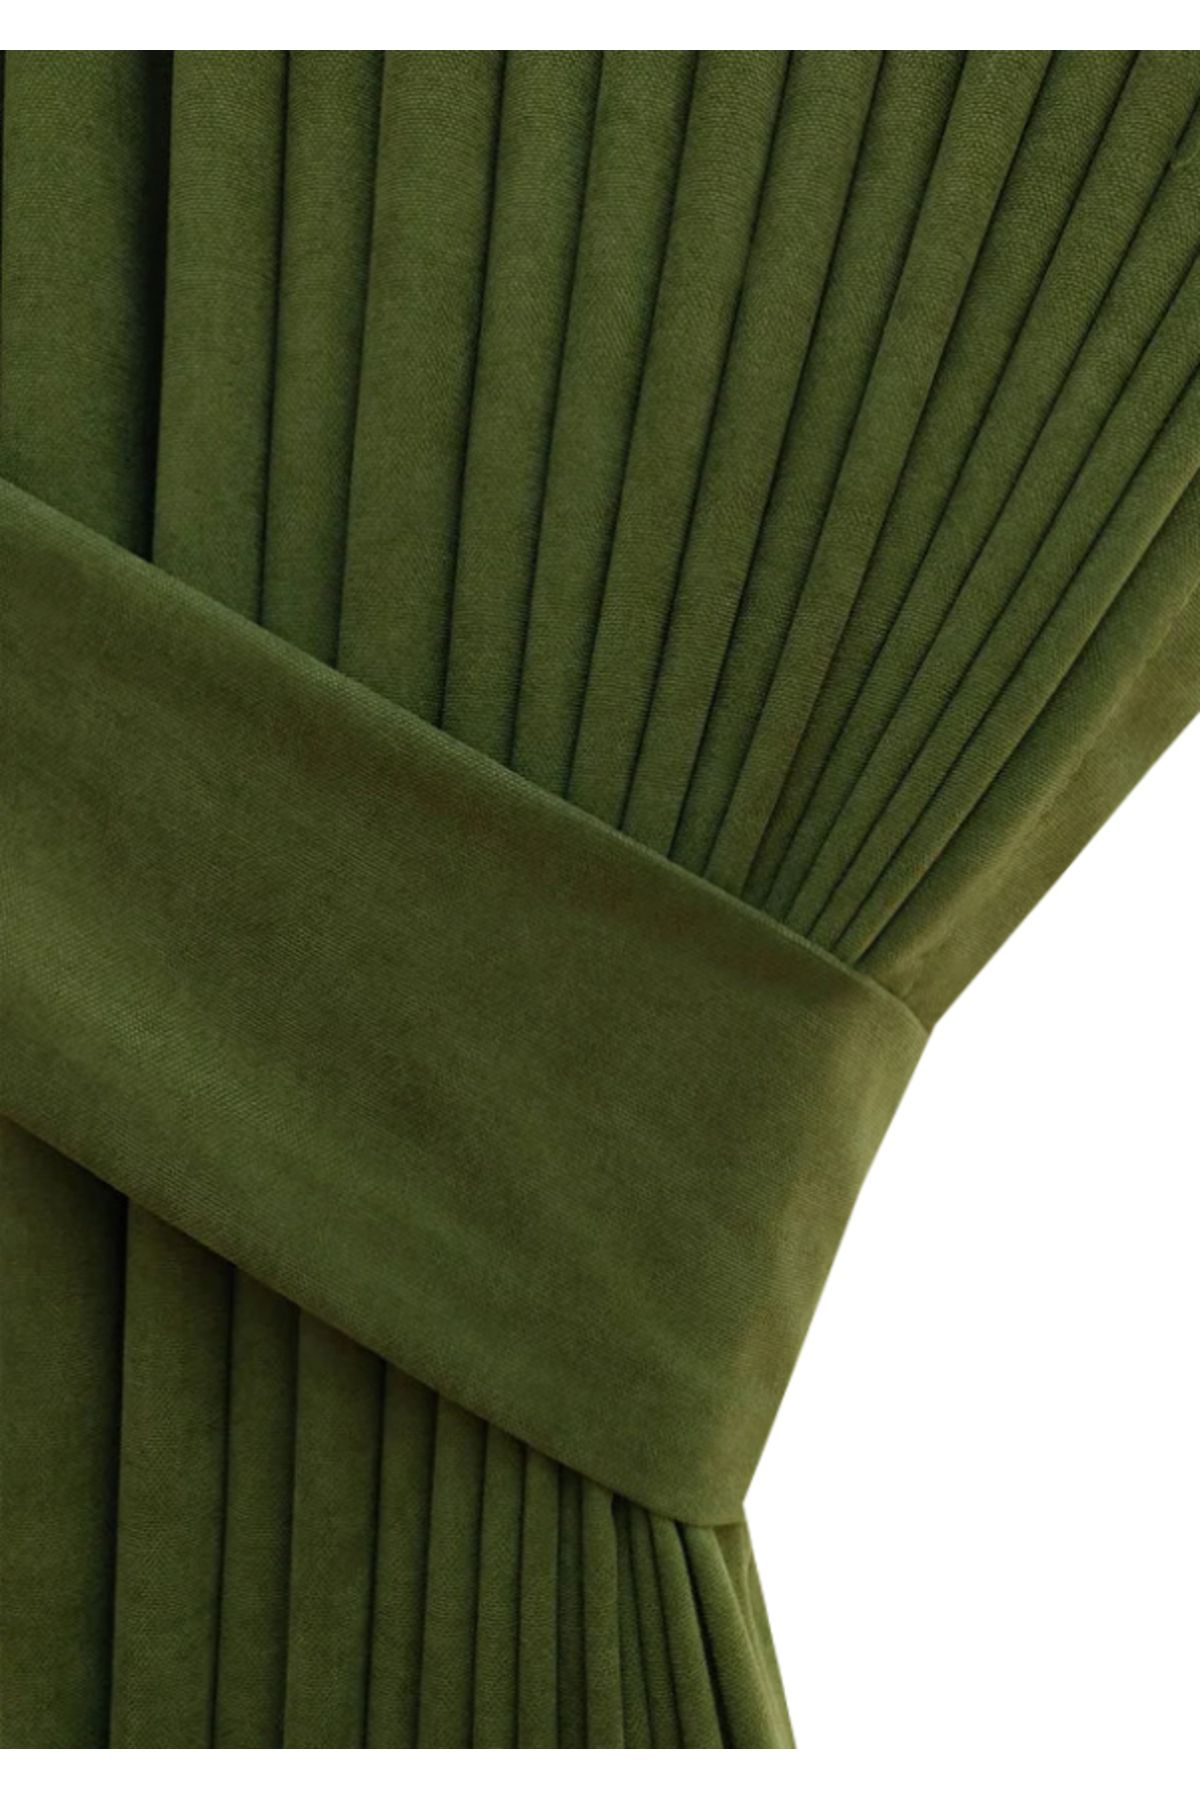 Evdepo Home Taç Petek Dokulu Çimen Yeşili Düz Renk 1/2,5 Normal Pileli Soft Fon Perde, Tek Kanat